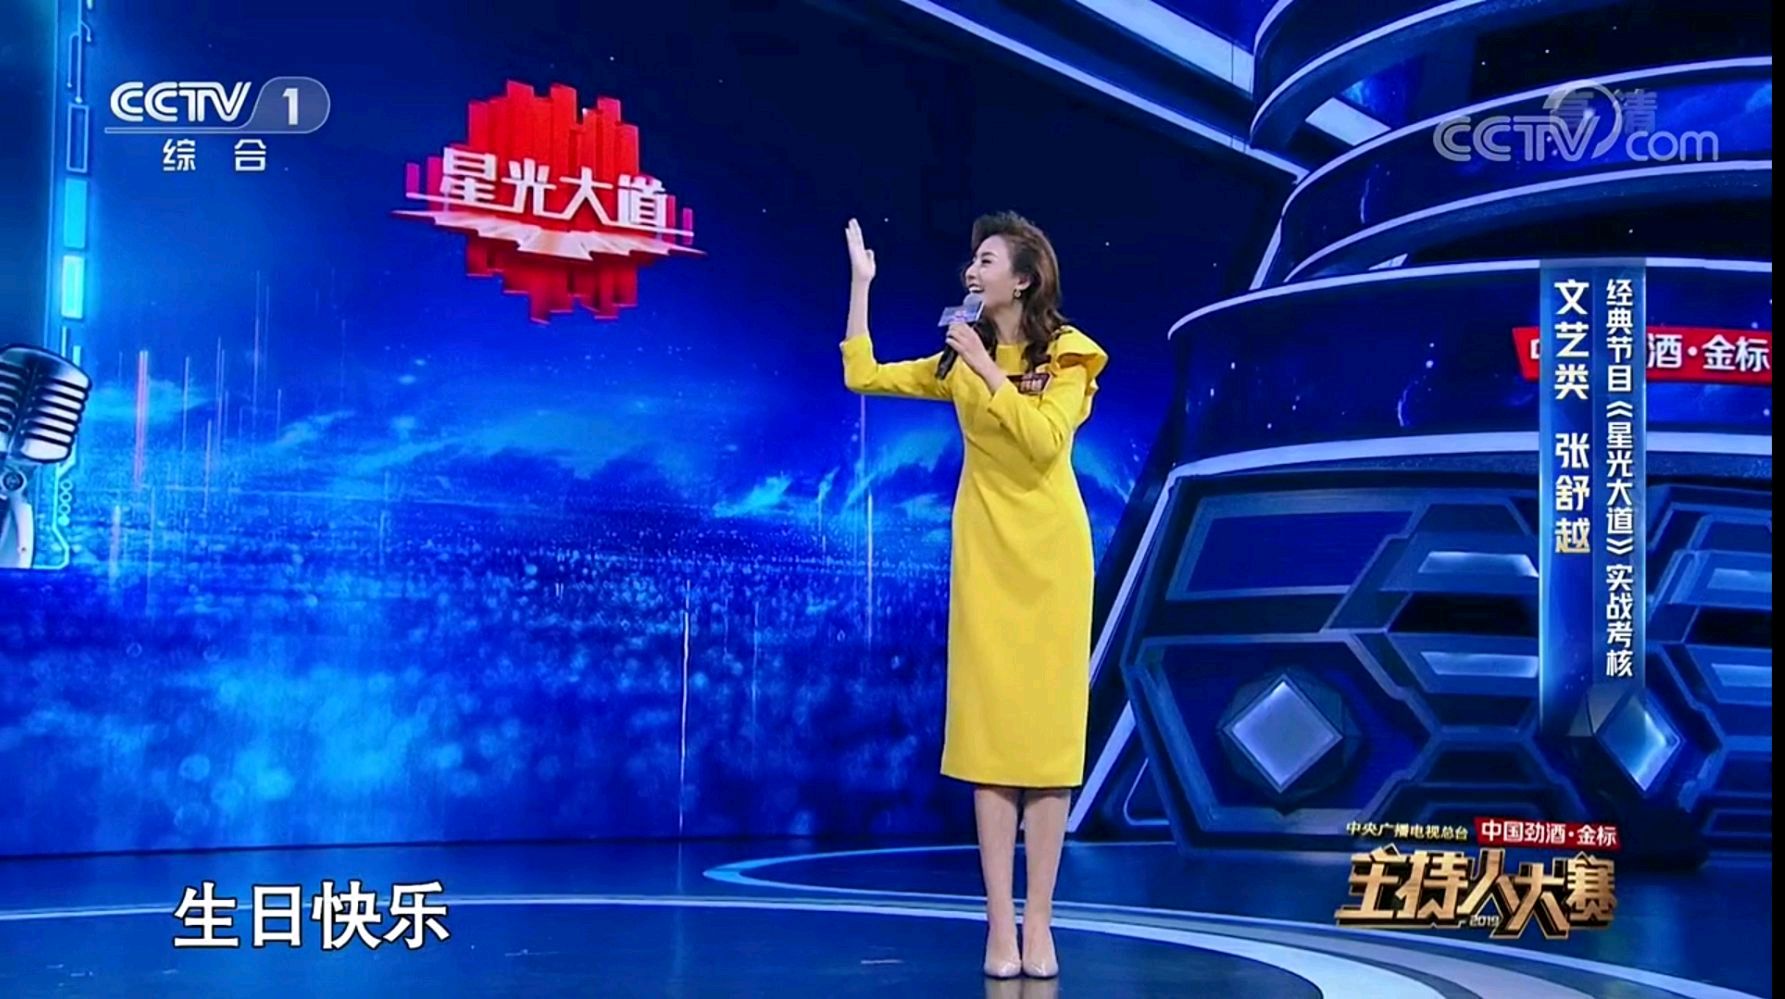 原创主持人大赛:张舒越再次以气质取胜,央视领导点名说她适合主持晚会